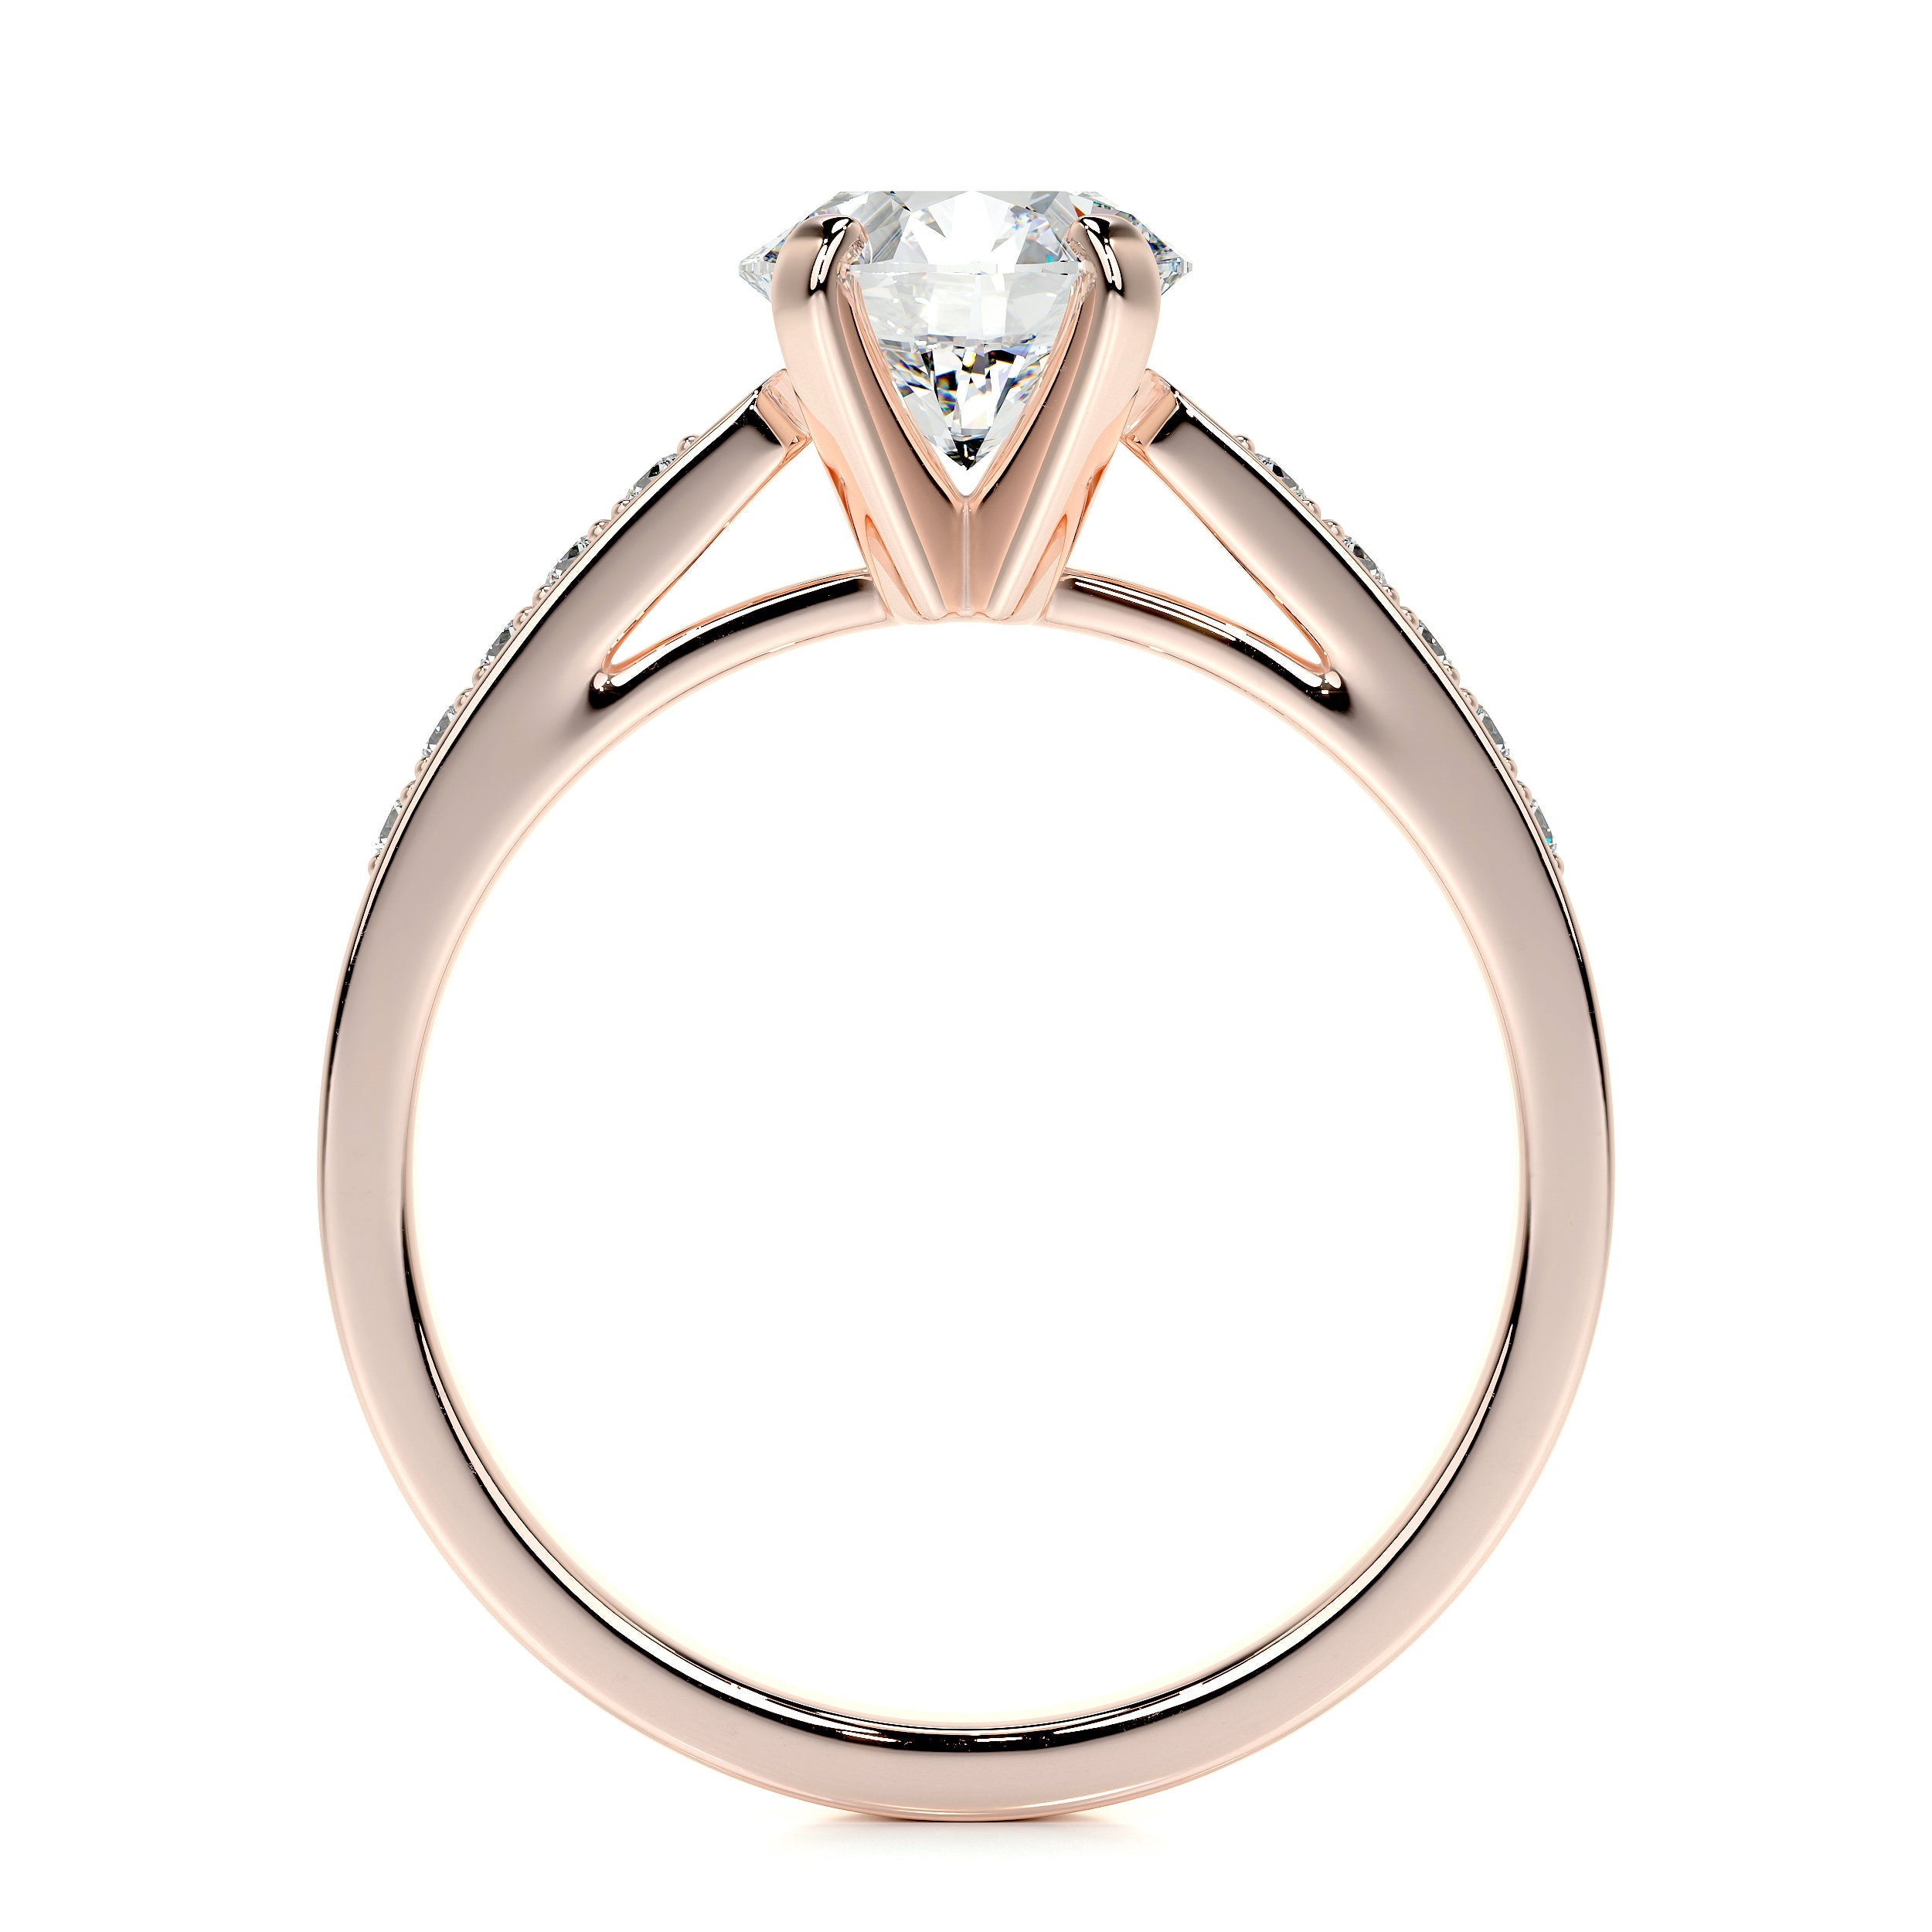 Margaret Lab Grown Diamond Ring   (1.35 Carat) -14K Rose Gold